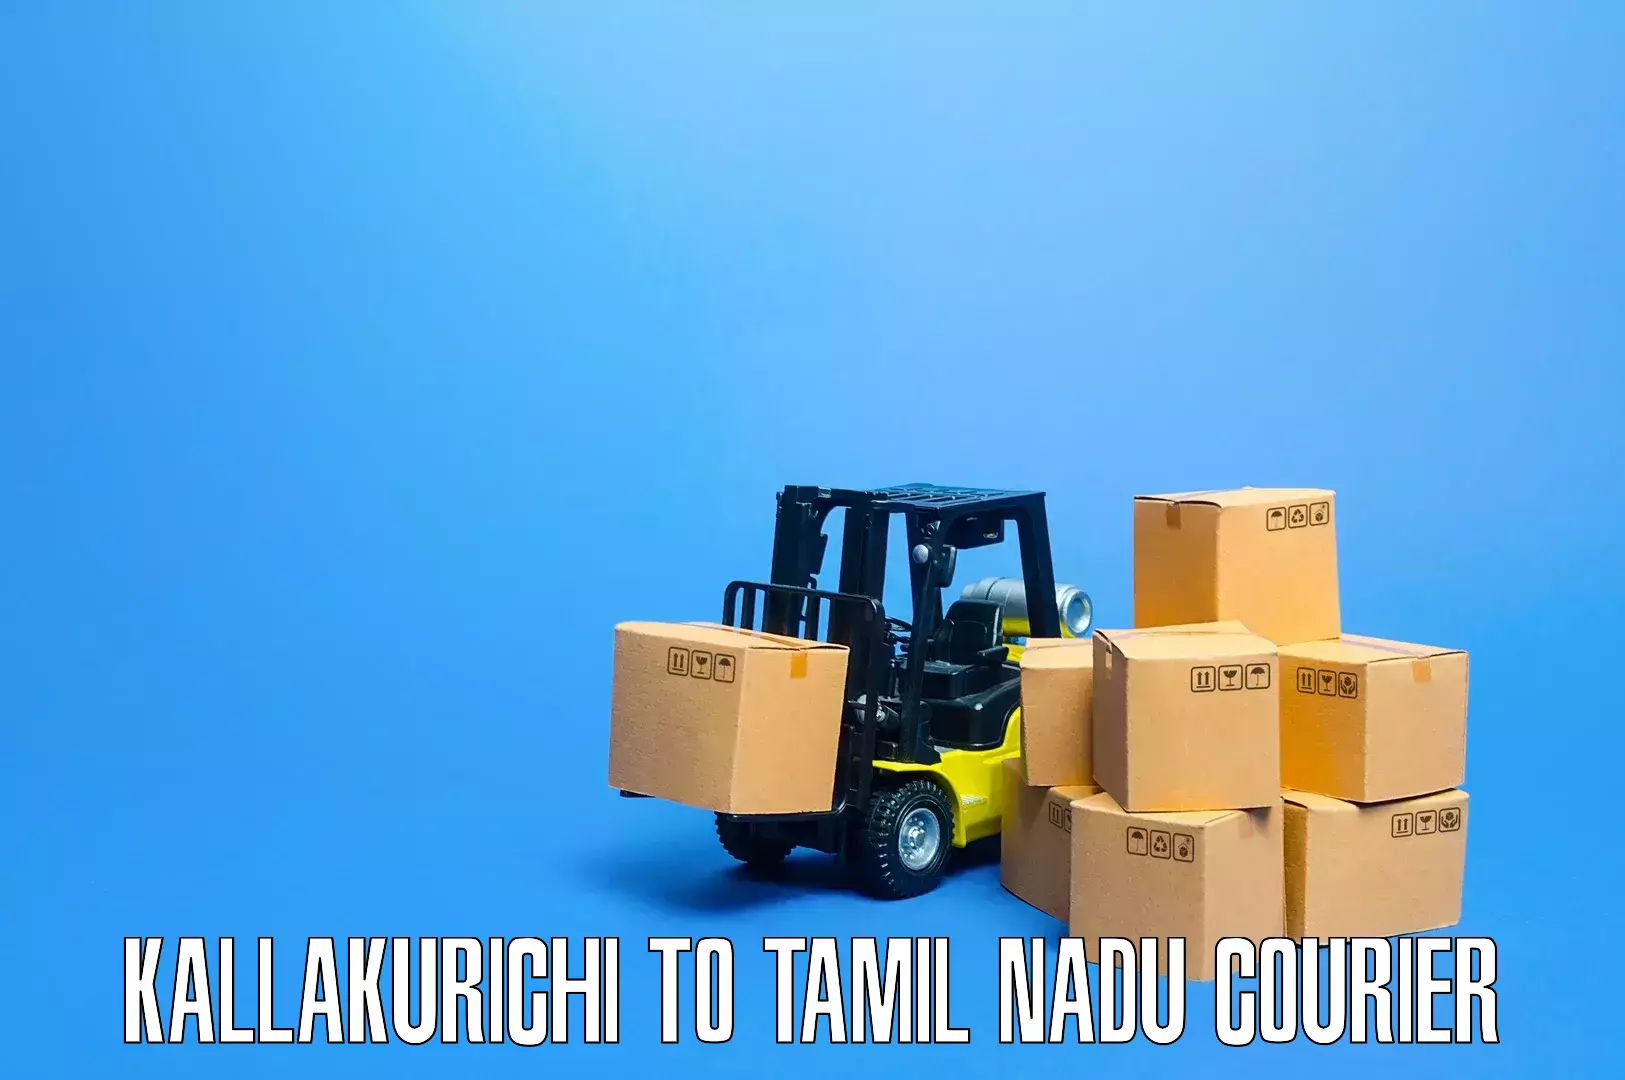 Expert furniture movers Kallakurichi to IIIT Tiruchirappalli